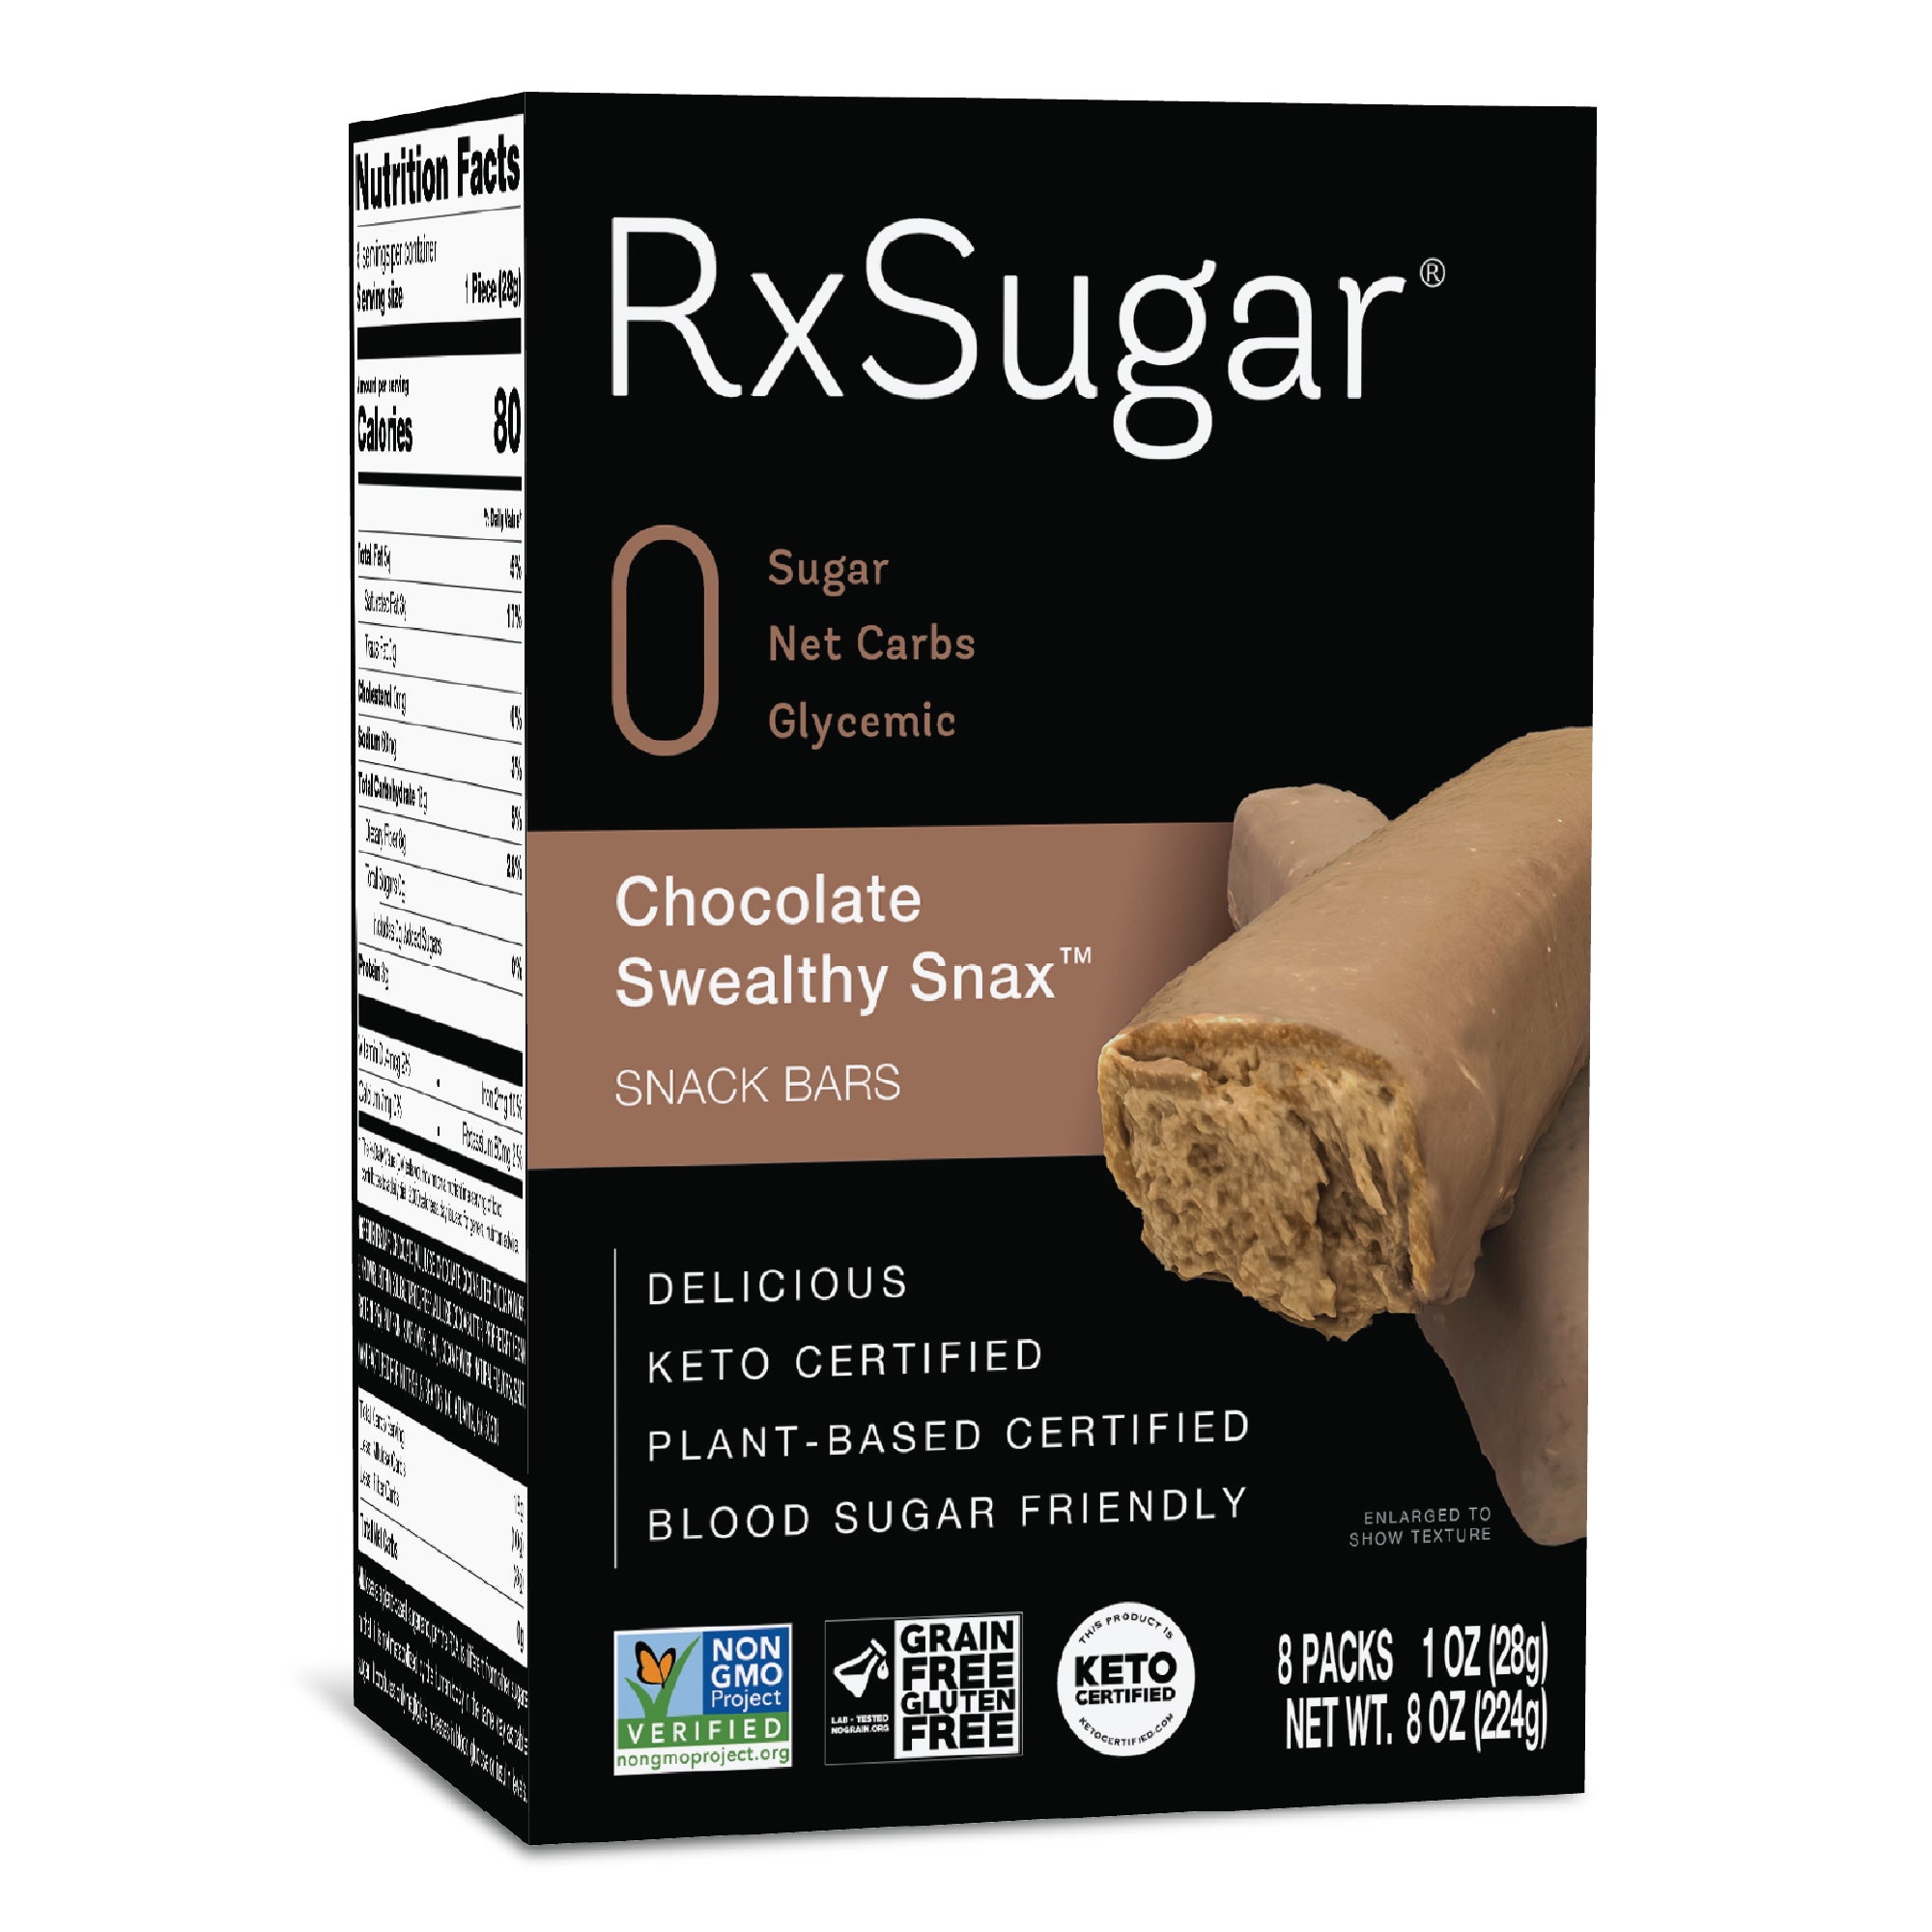 RxSugar Carton Swealthy Snax Front